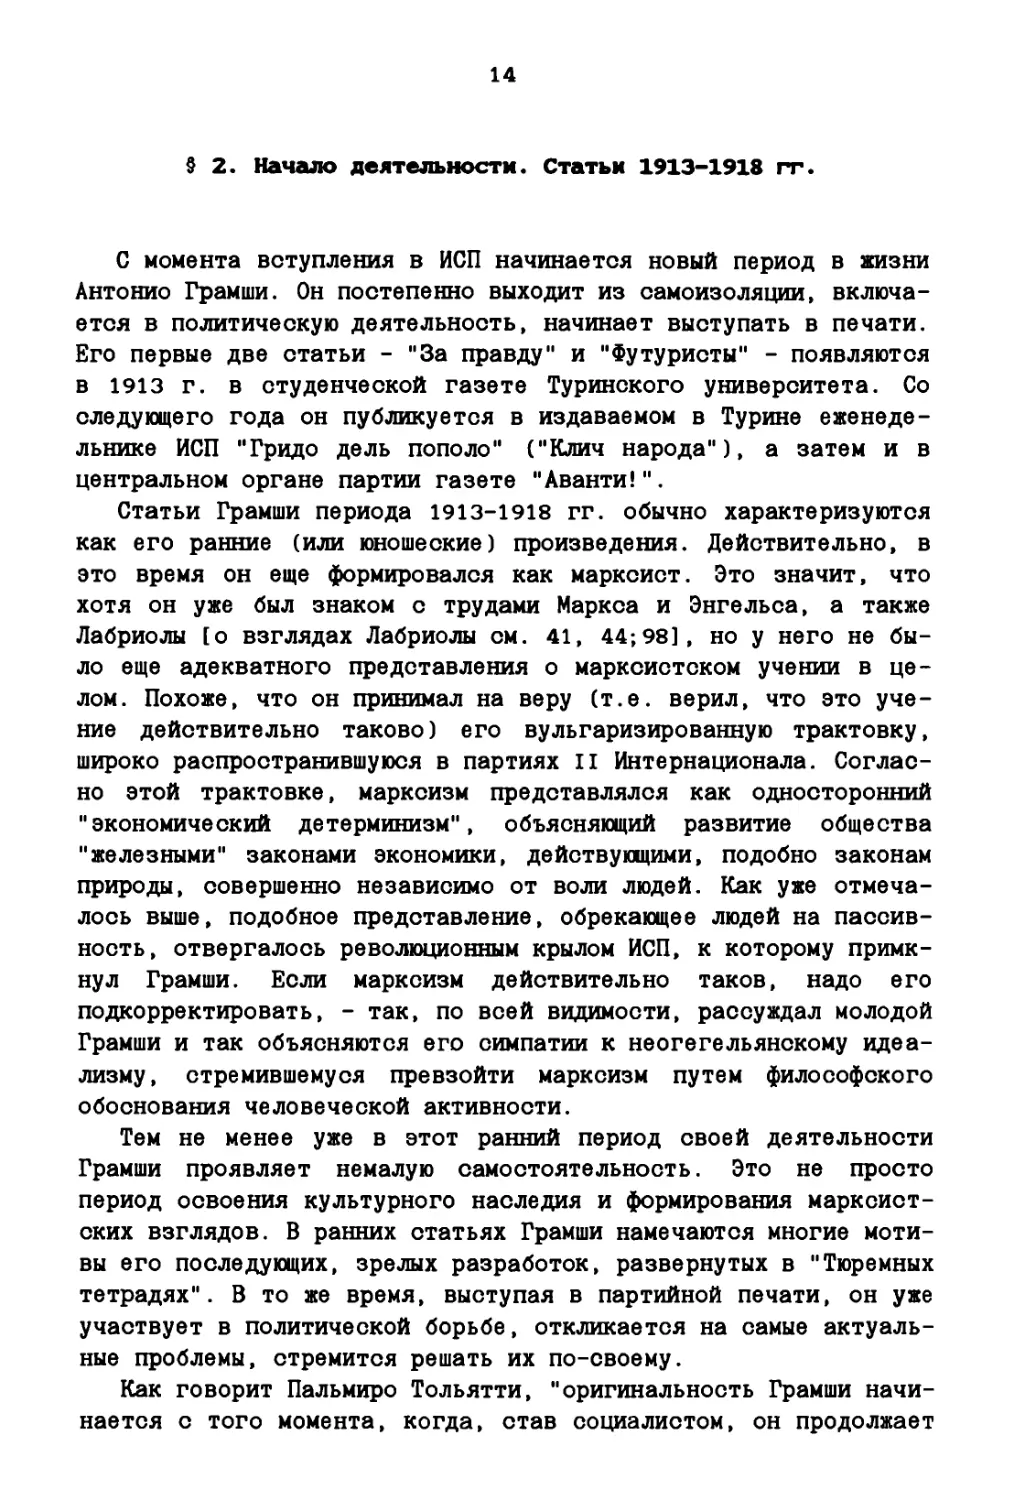 § 2. Начало деятельности. Статьи 1913-1918 гг.